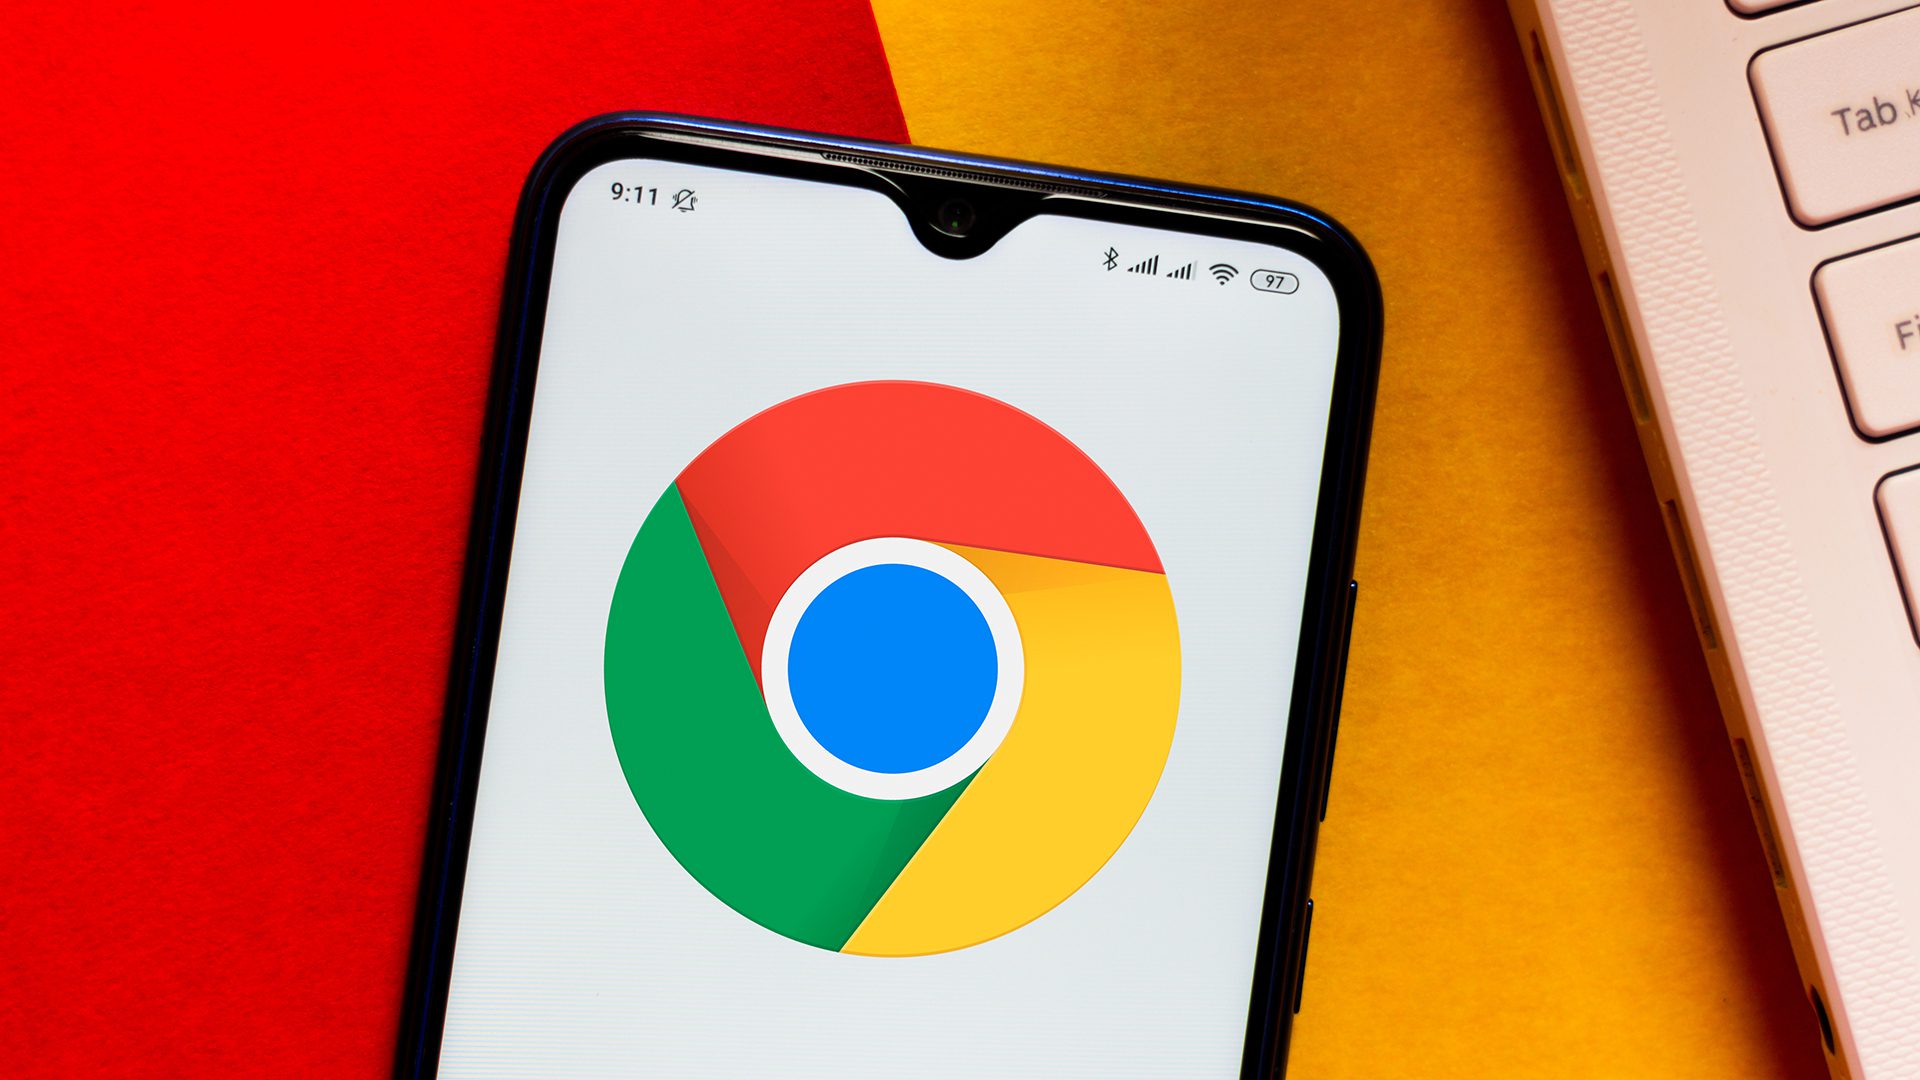 Het Google Chrome-logo dat op een Android-smartphone wordt weergegeven, rust op een oranje en rood oppervlak